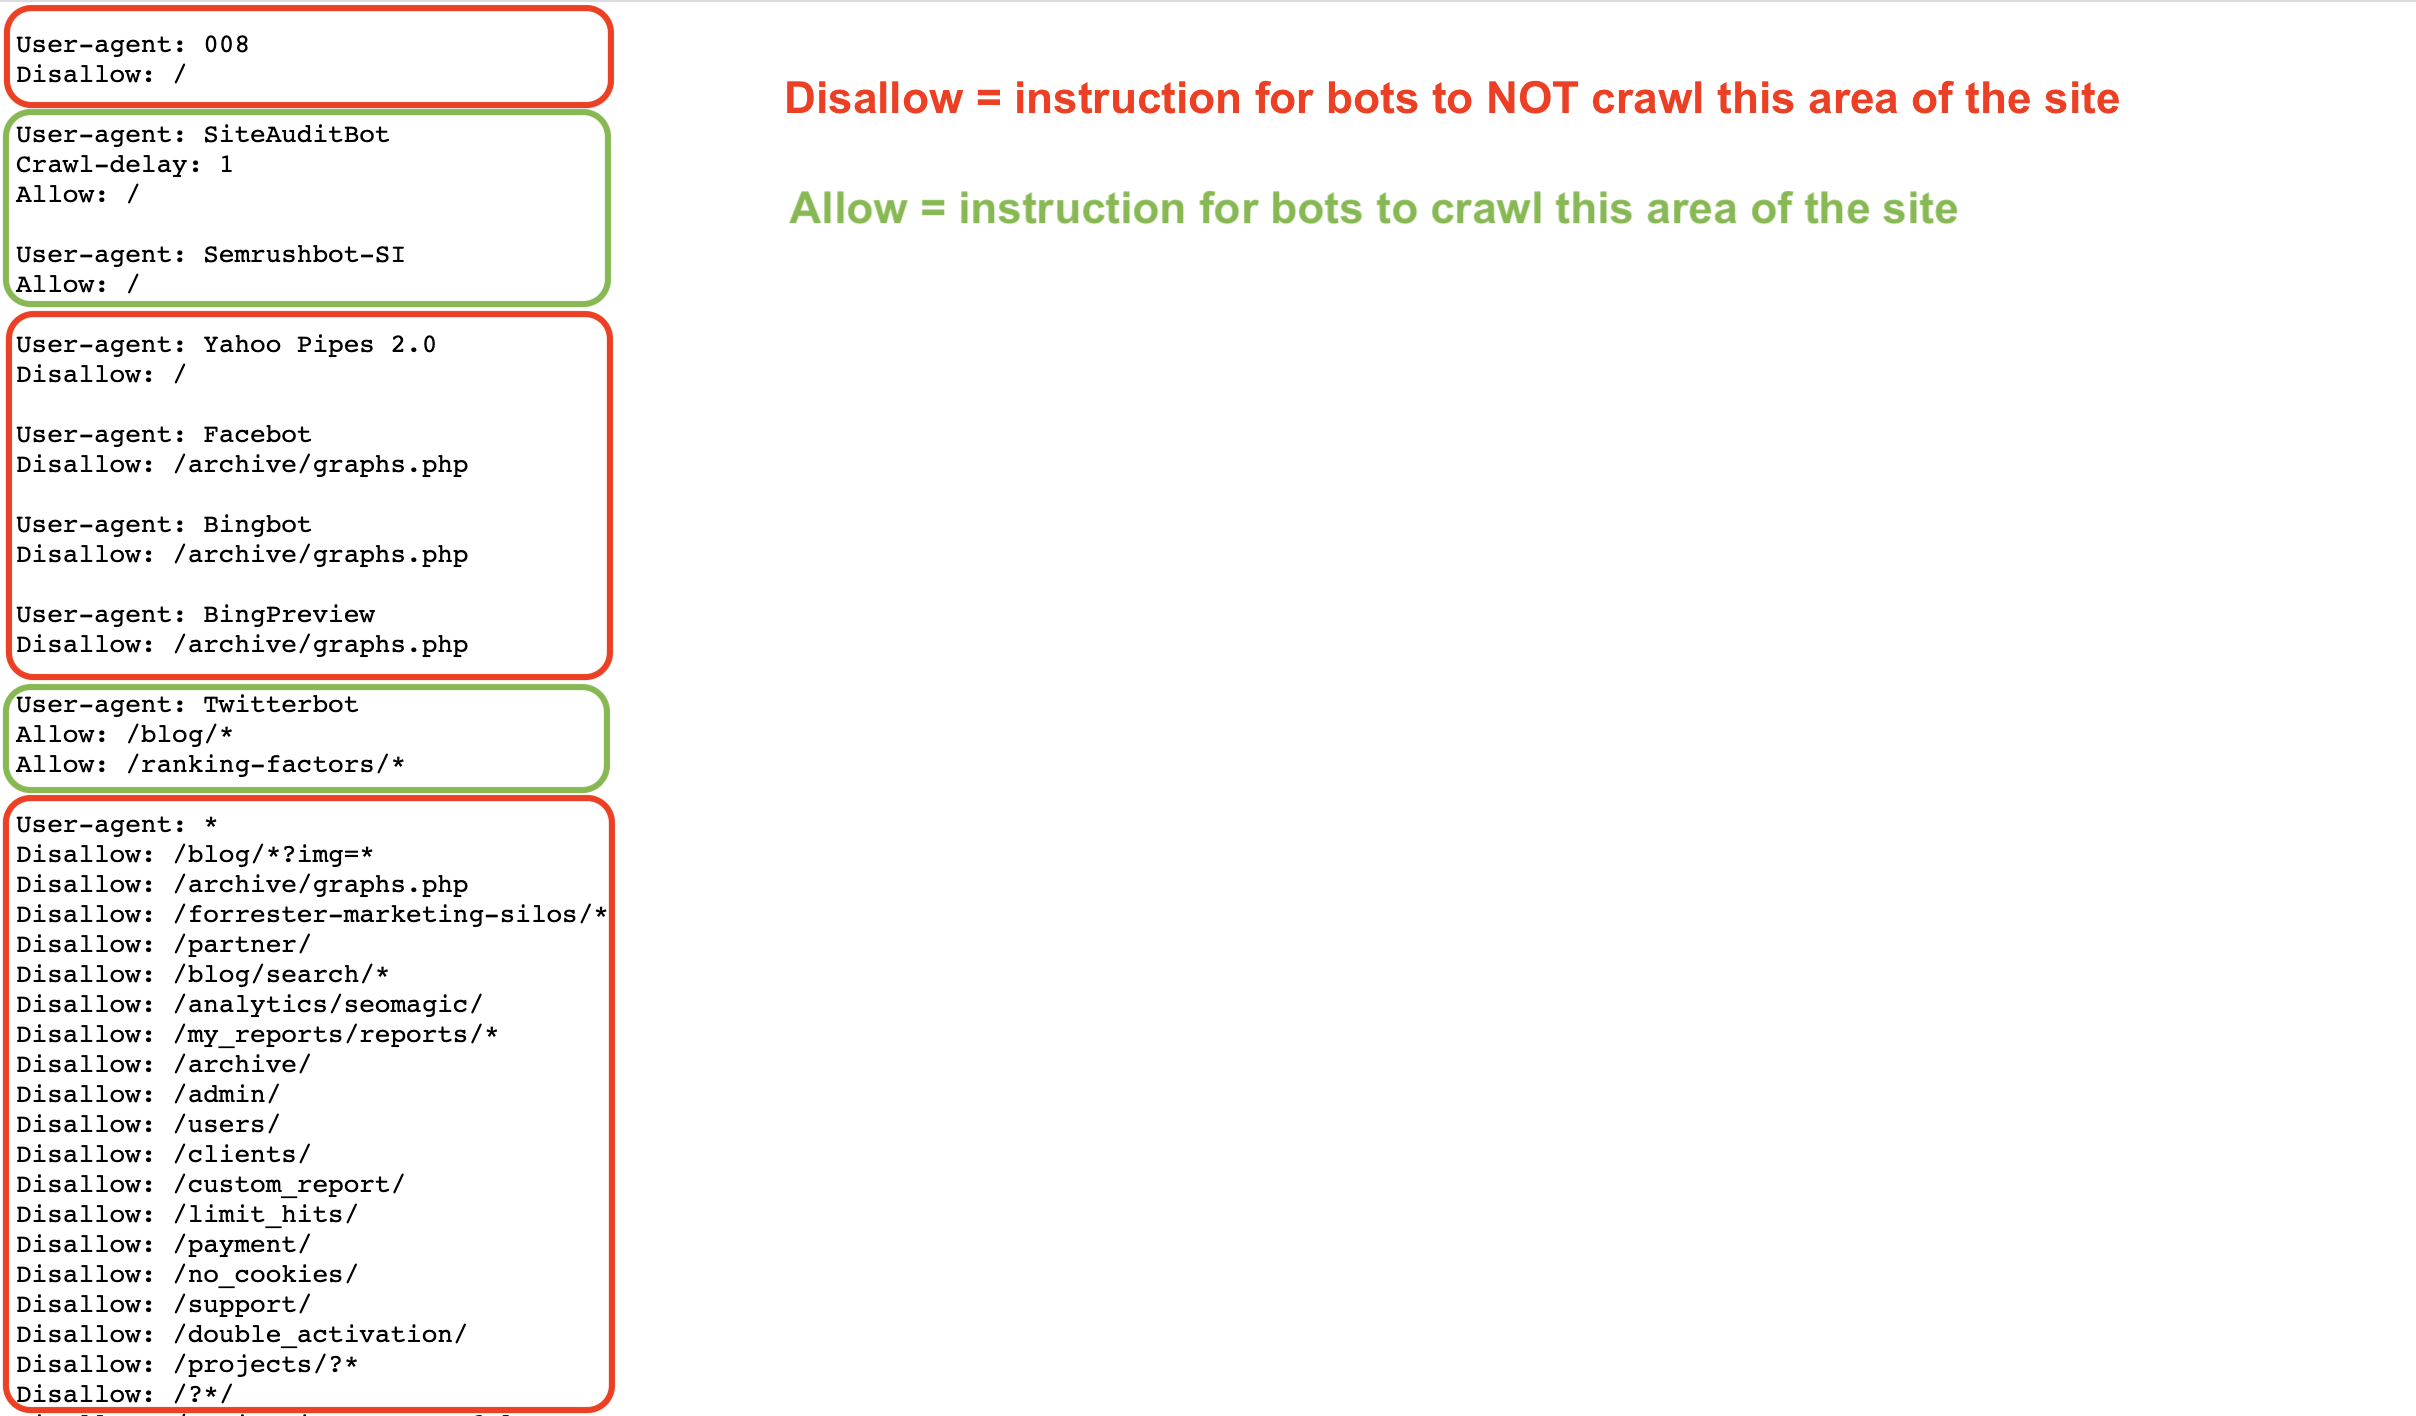 Liste des directives « Allow » et « Disallow » dans un exemple de fichier robots.txt. Les directives « Disallow » sont mises en évidence en rouge et les directives « Allow » en vert clair. On trouve également des instructions supplémentaires du côté droit de la capture d'écran : Disallow = instruction pour les robots de NE PAS explorer cette zone du site (en rouge), Allow = instruction pour les robots d'explorer cette zone du site (en vert).